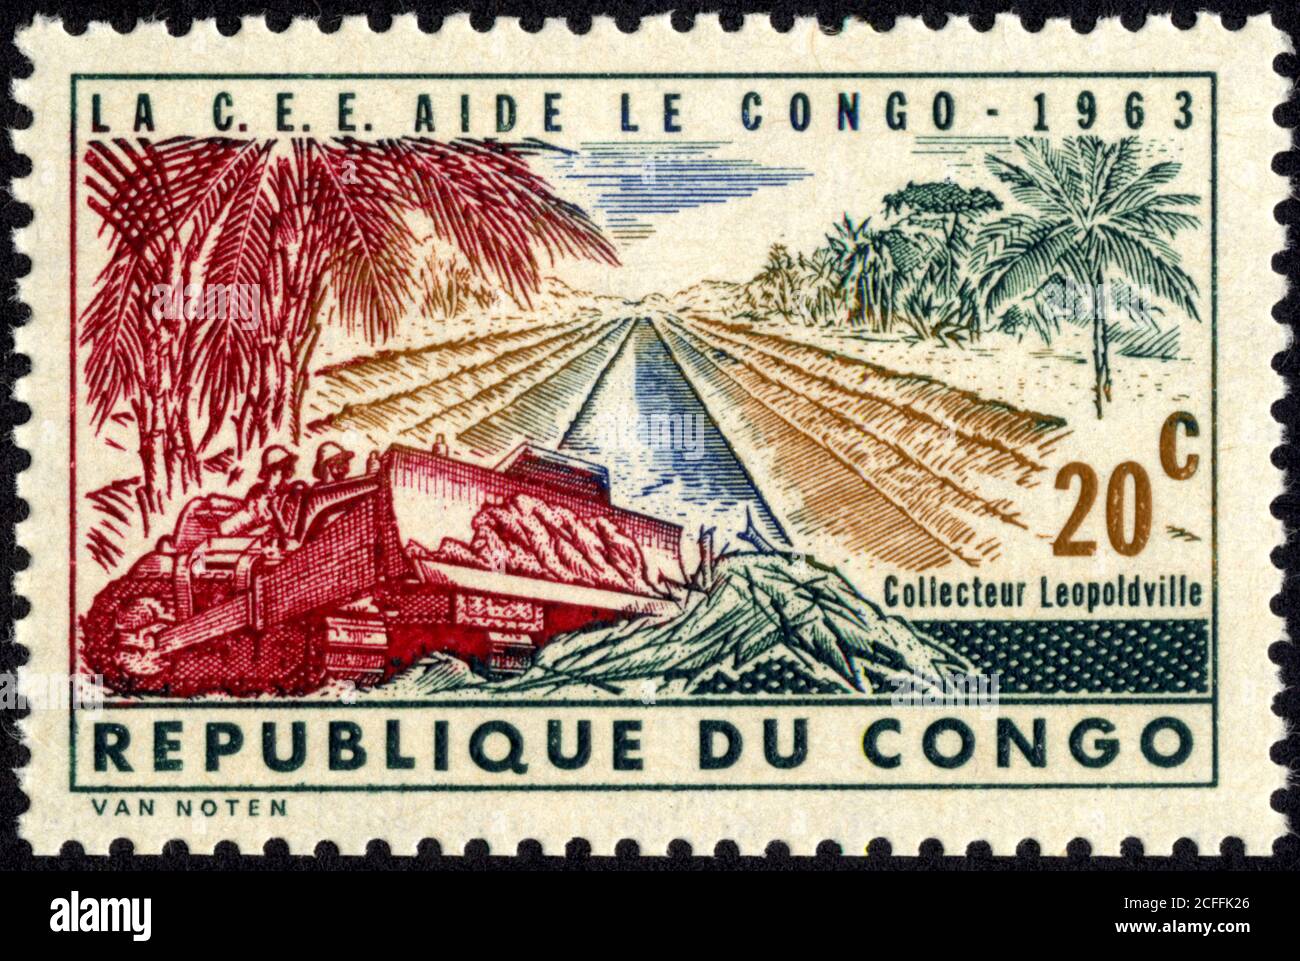 Timbre la C.E.E. Aide le Congo. 1963. 20 C. Collecteur Leopoldville. République du Congo Stockfoto